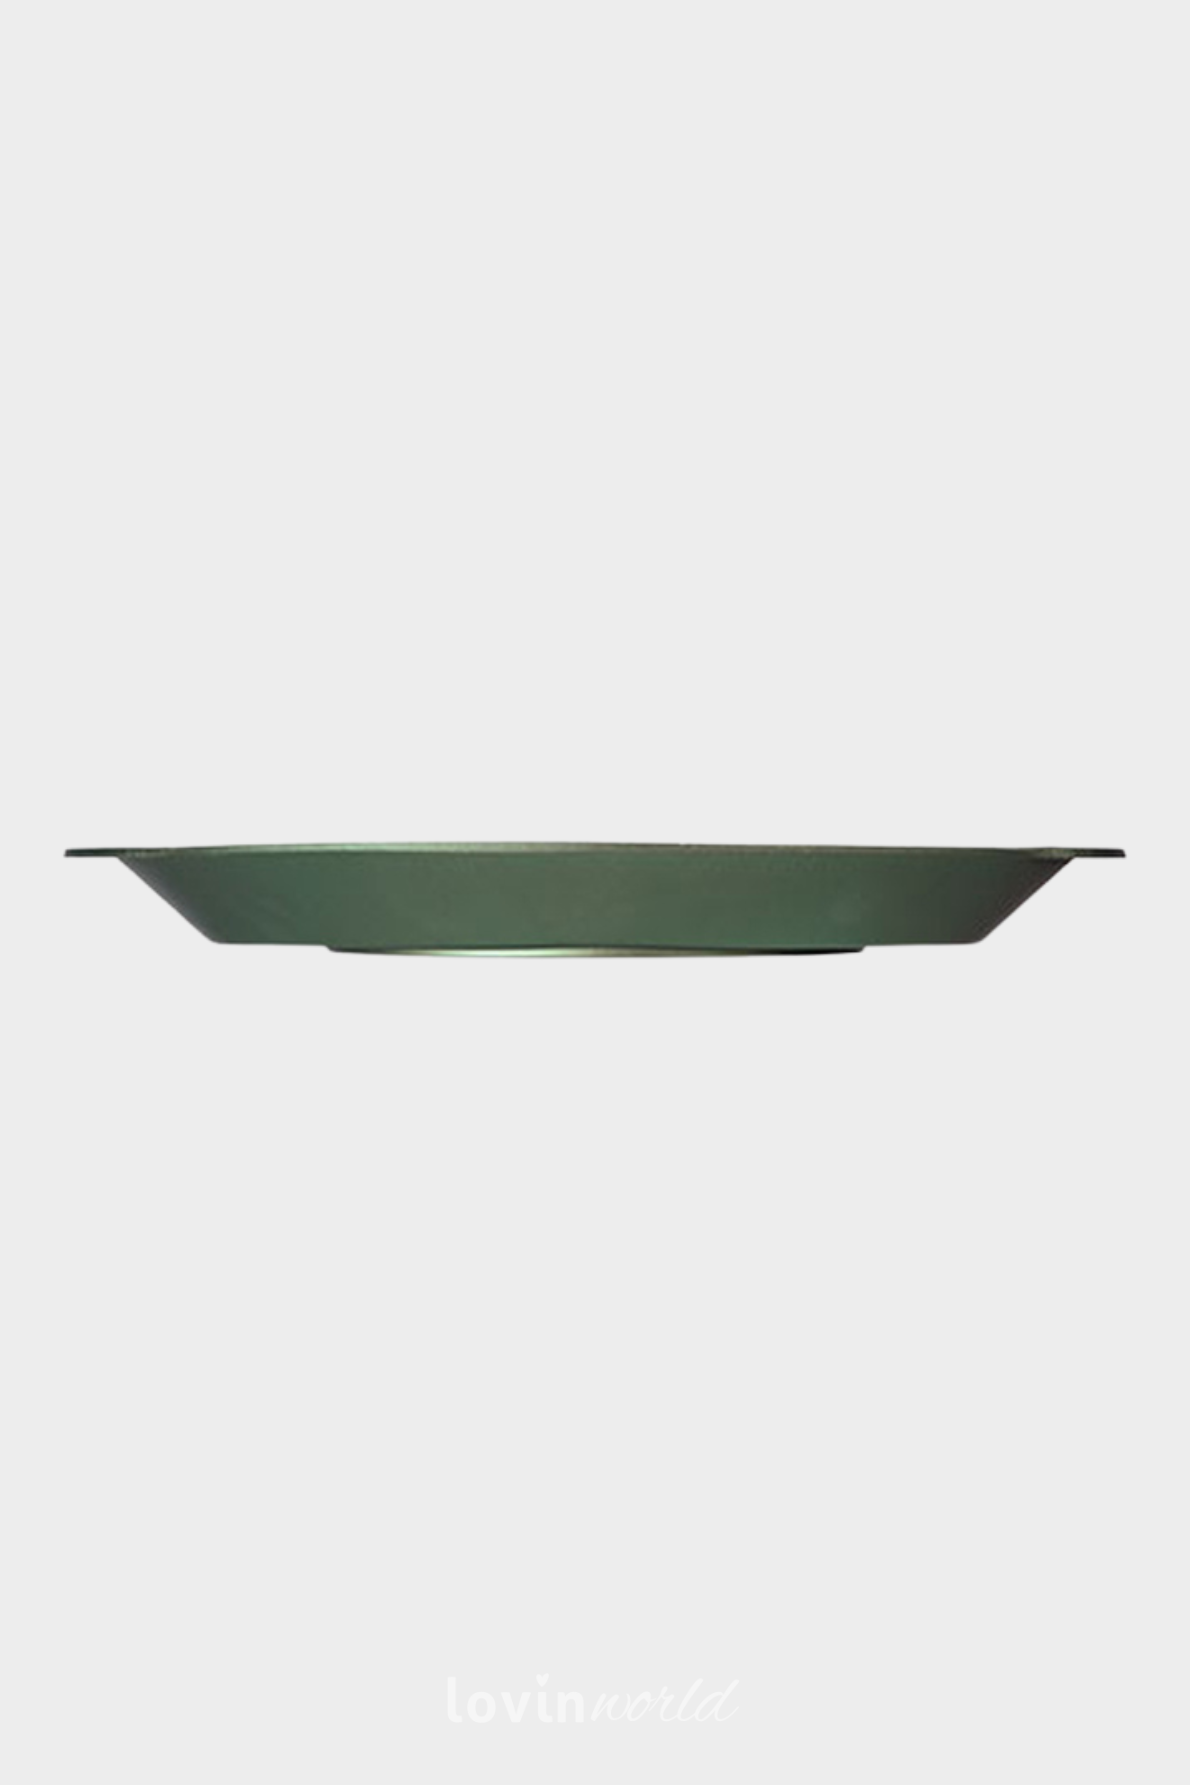 Pesciera ovale Dr. Green in alluminio antiaderente 46x26 cm.-3